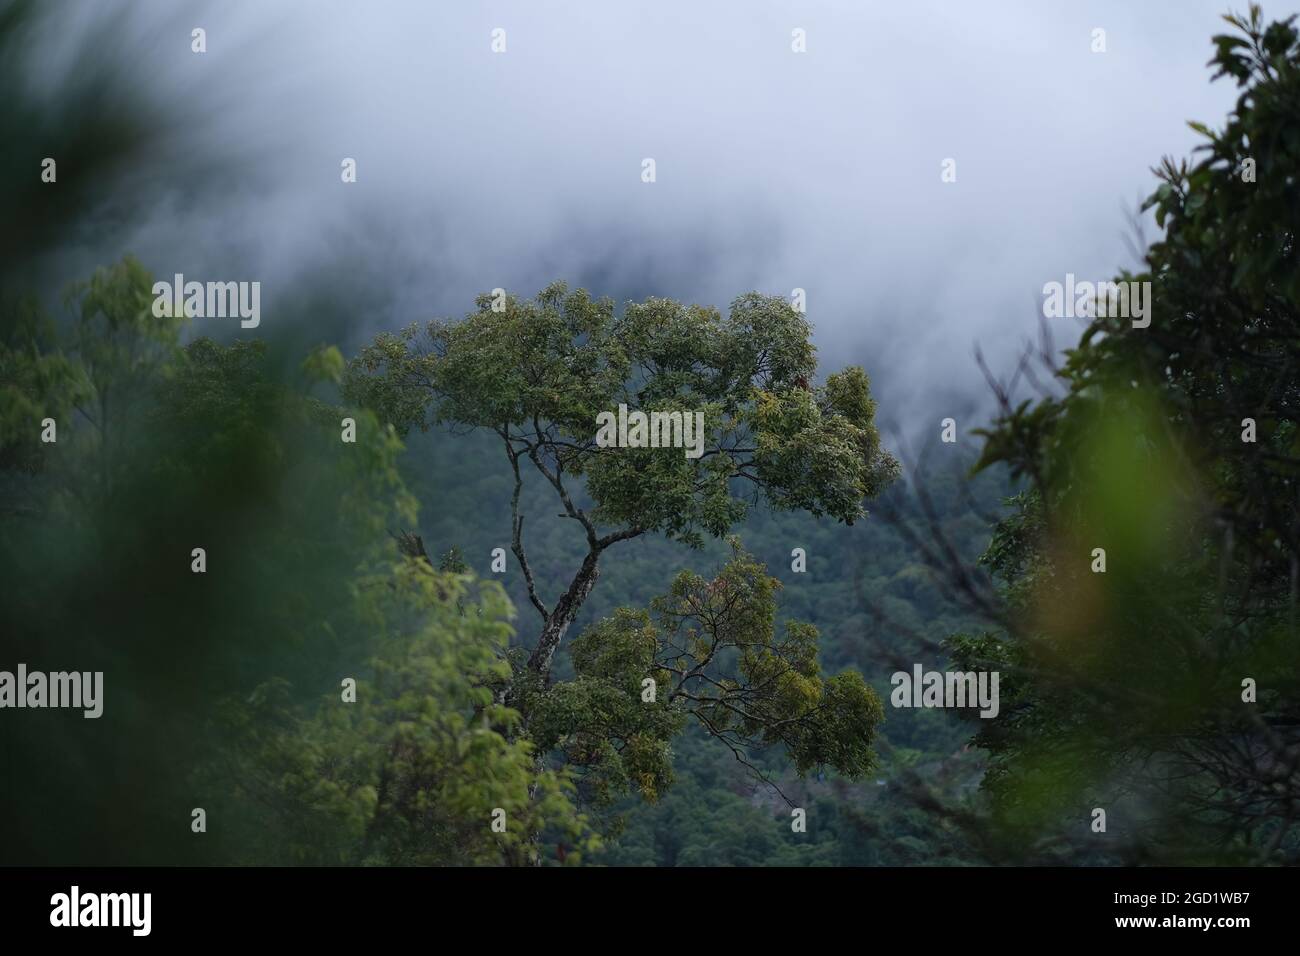 Un viejo árbol superviviente solitario está extendiéndose sus ramas sobre bosques de tierras altas con niebla en una ubicación remota del norte de Tailandia Foto de stock